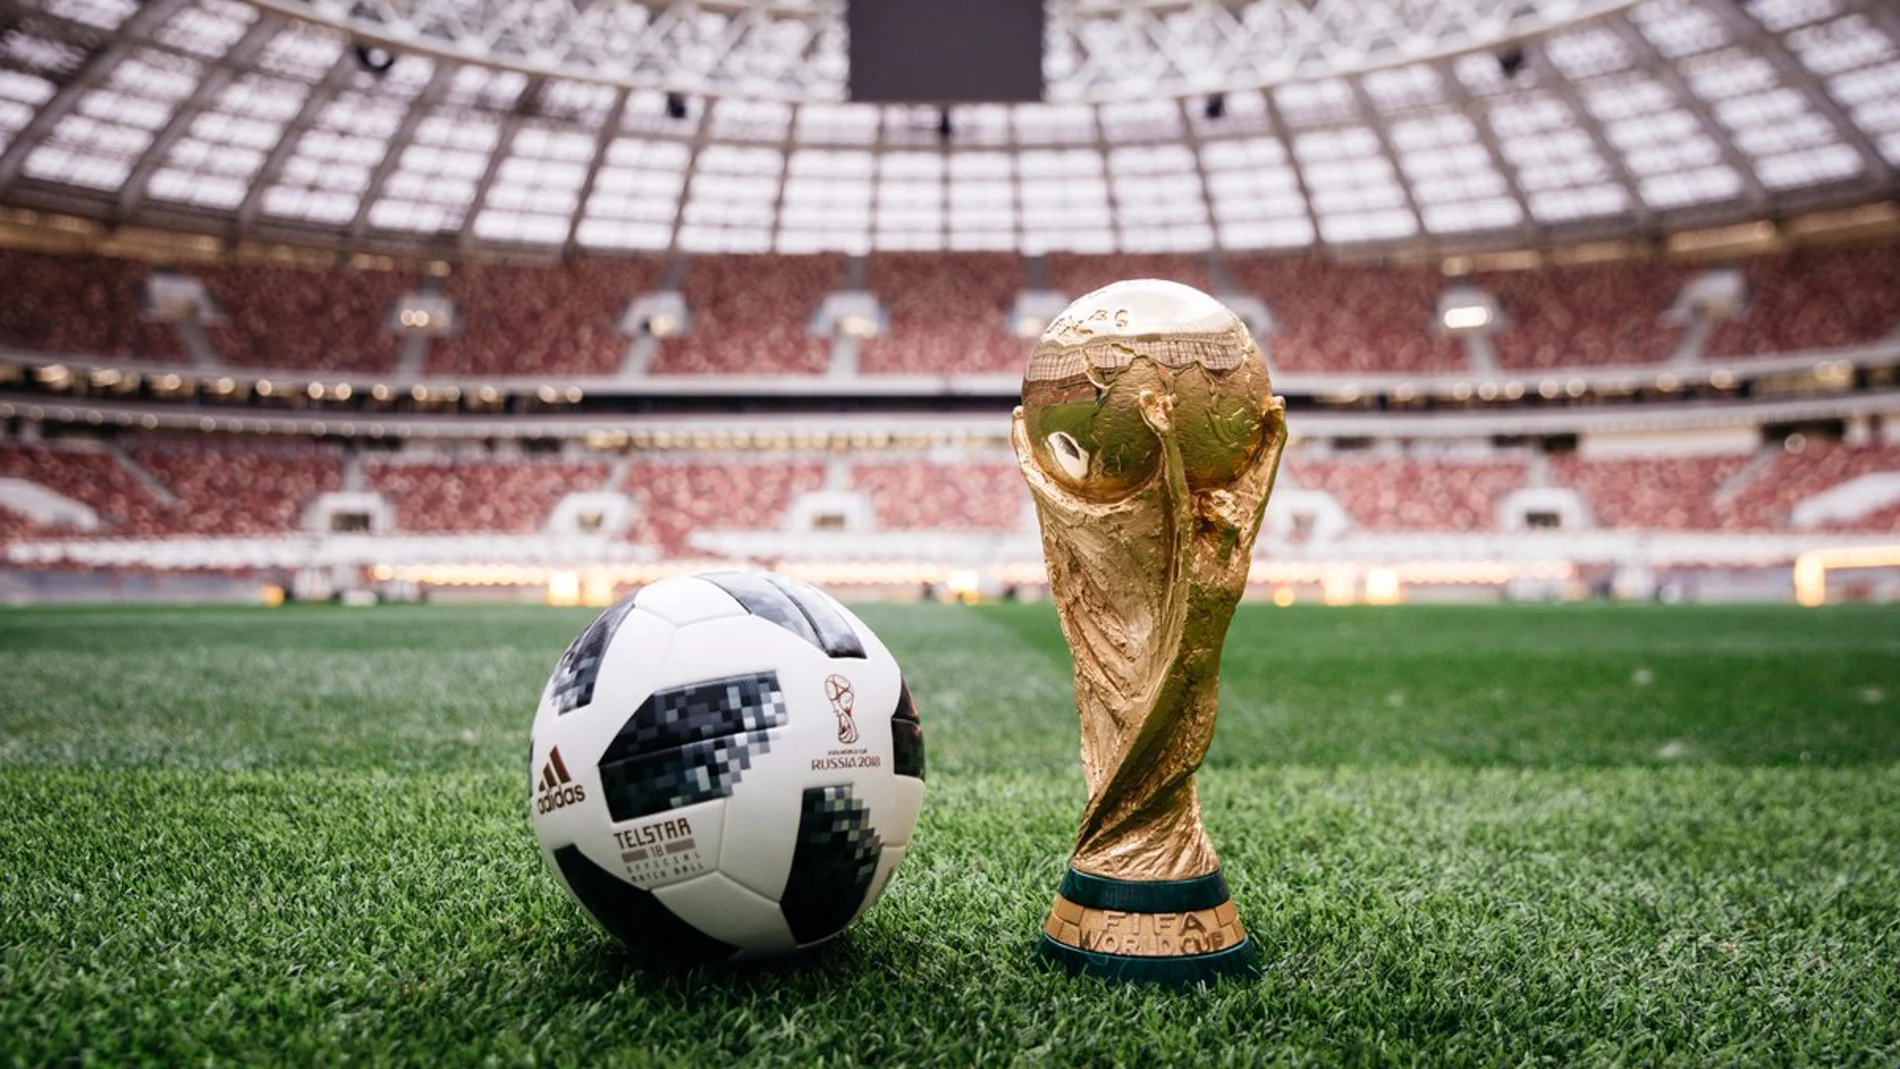 Acumulativo Te mejorarás Por qué no FIFA presenta el Telstar 18, el balón oficial del Mundial de Rusia 2018